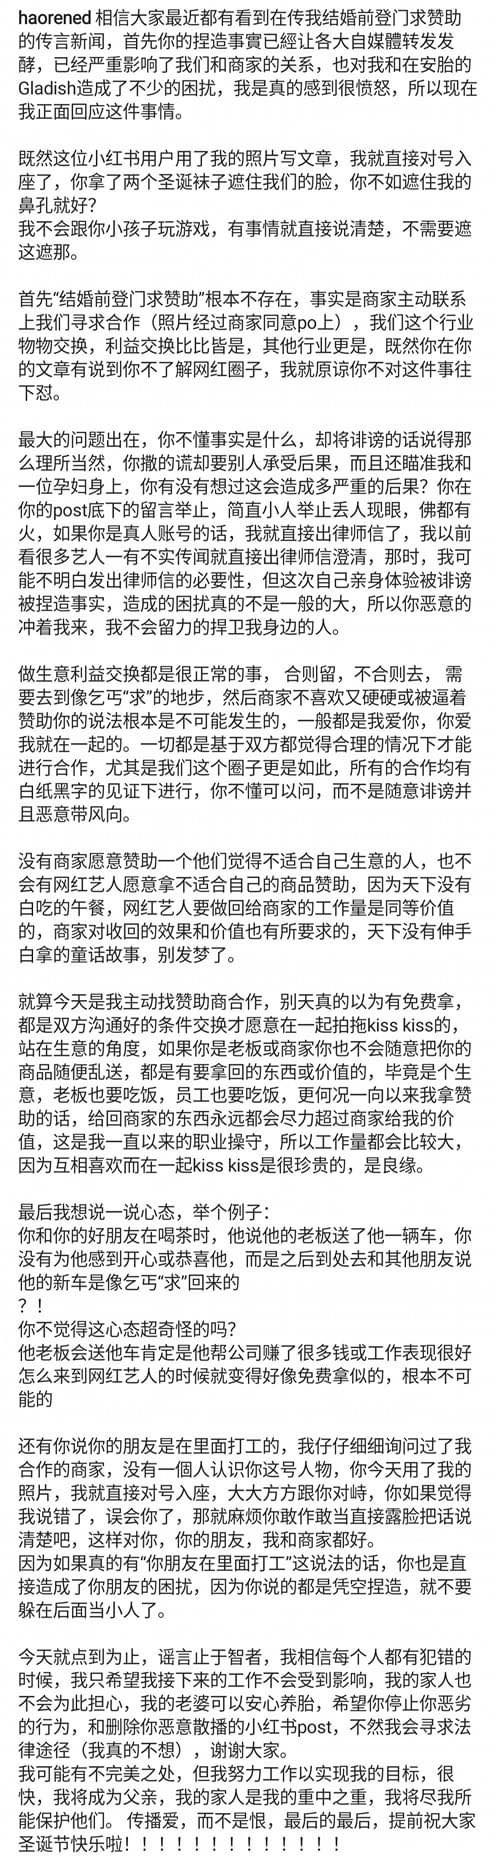 朱浩仁遭影射结婚登门求赞助  怒晒证据打脸造谣者